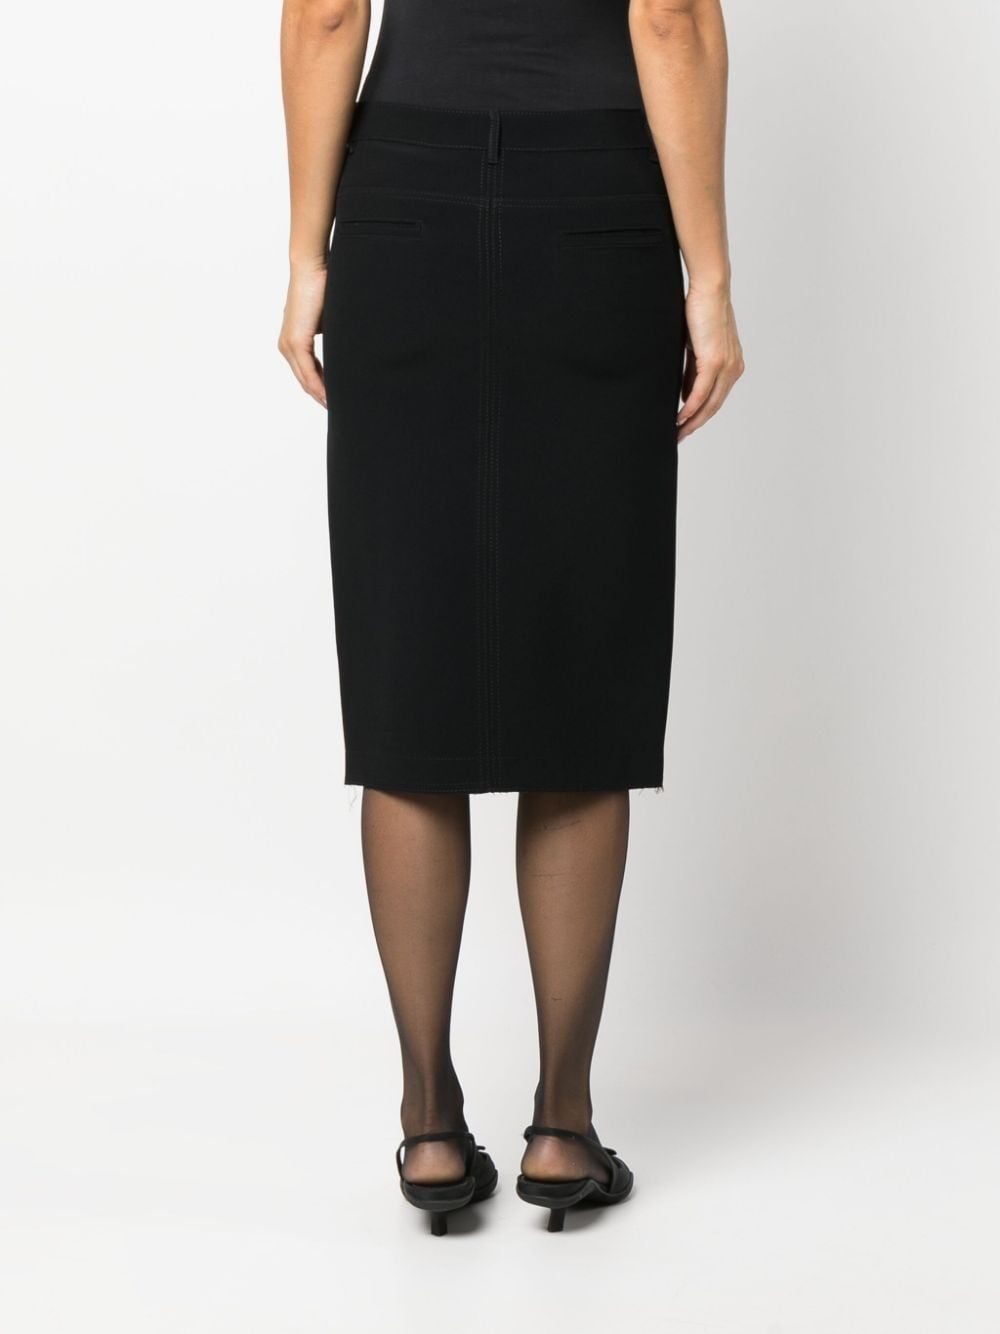 Shop N°21 Longuette Pencil Skirt